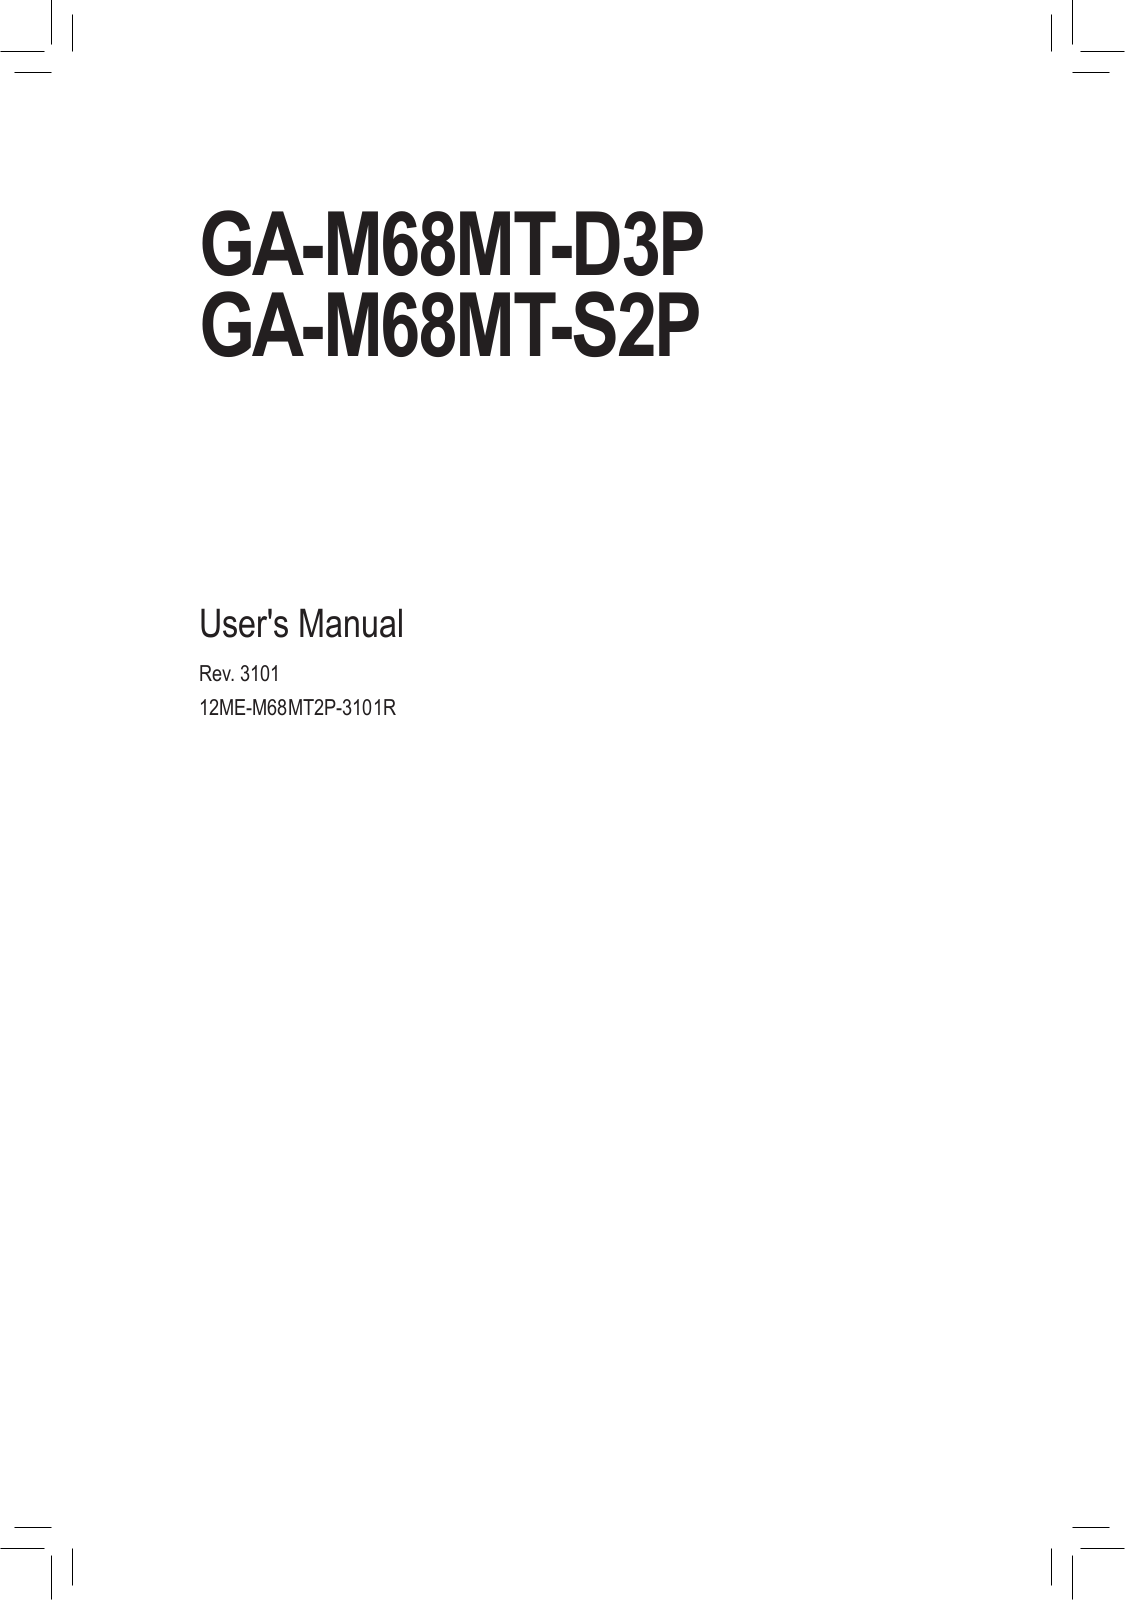 Gigabyte GA-M68MT-D3P, GA-M68MT-S2P User Manual